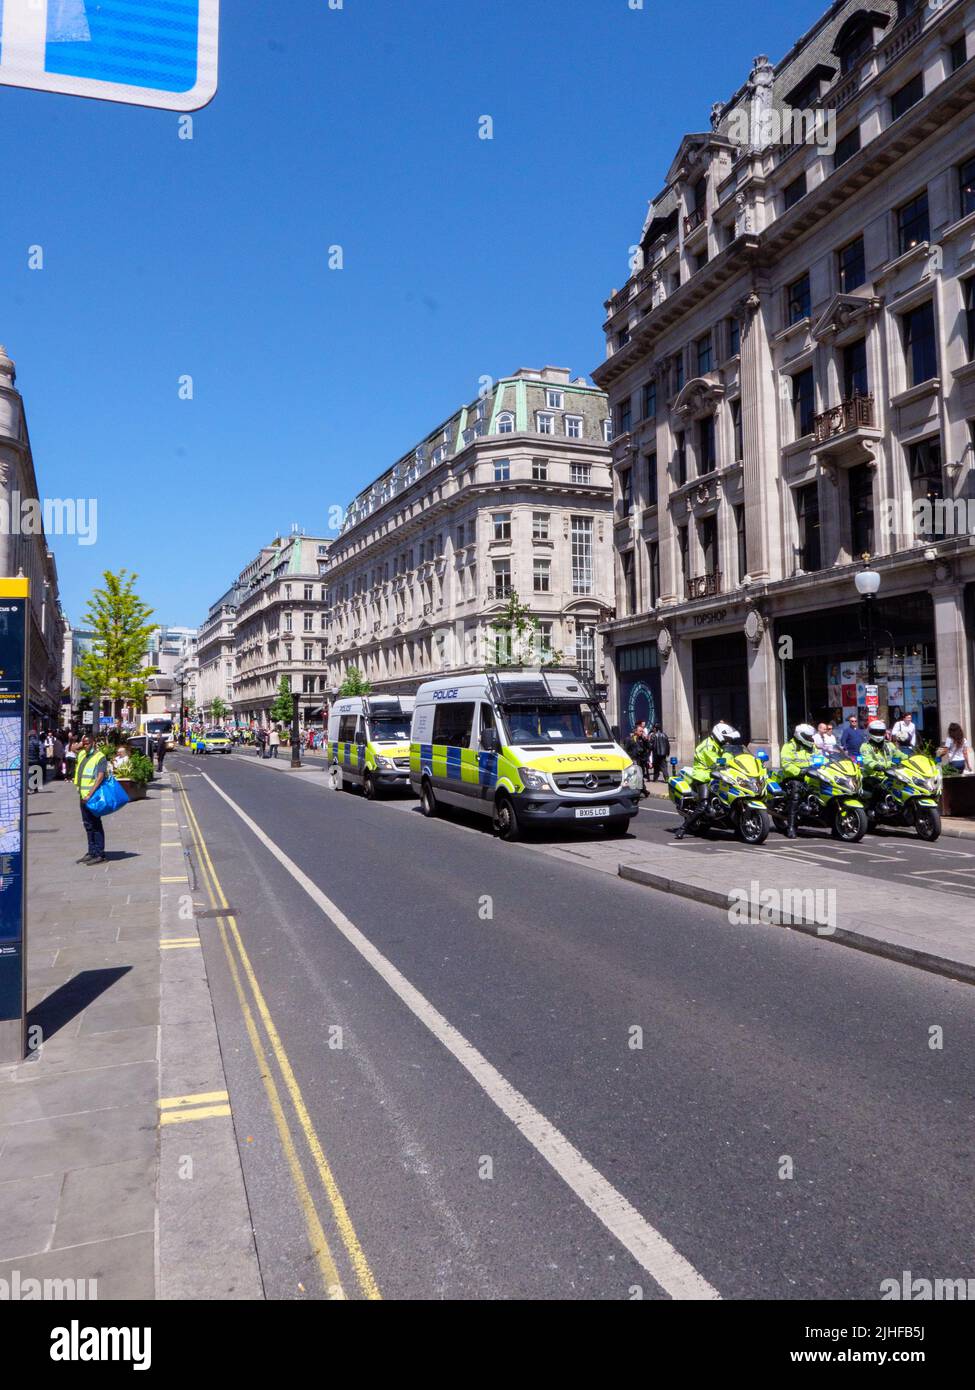 Londres, Royaume-Uni-14,5.22: La moto de l'unité de circulation de la police métropolitaine de Londres bloque la circulation sur Oxford Circus en raison de la manifestation approchant Banque D'Images